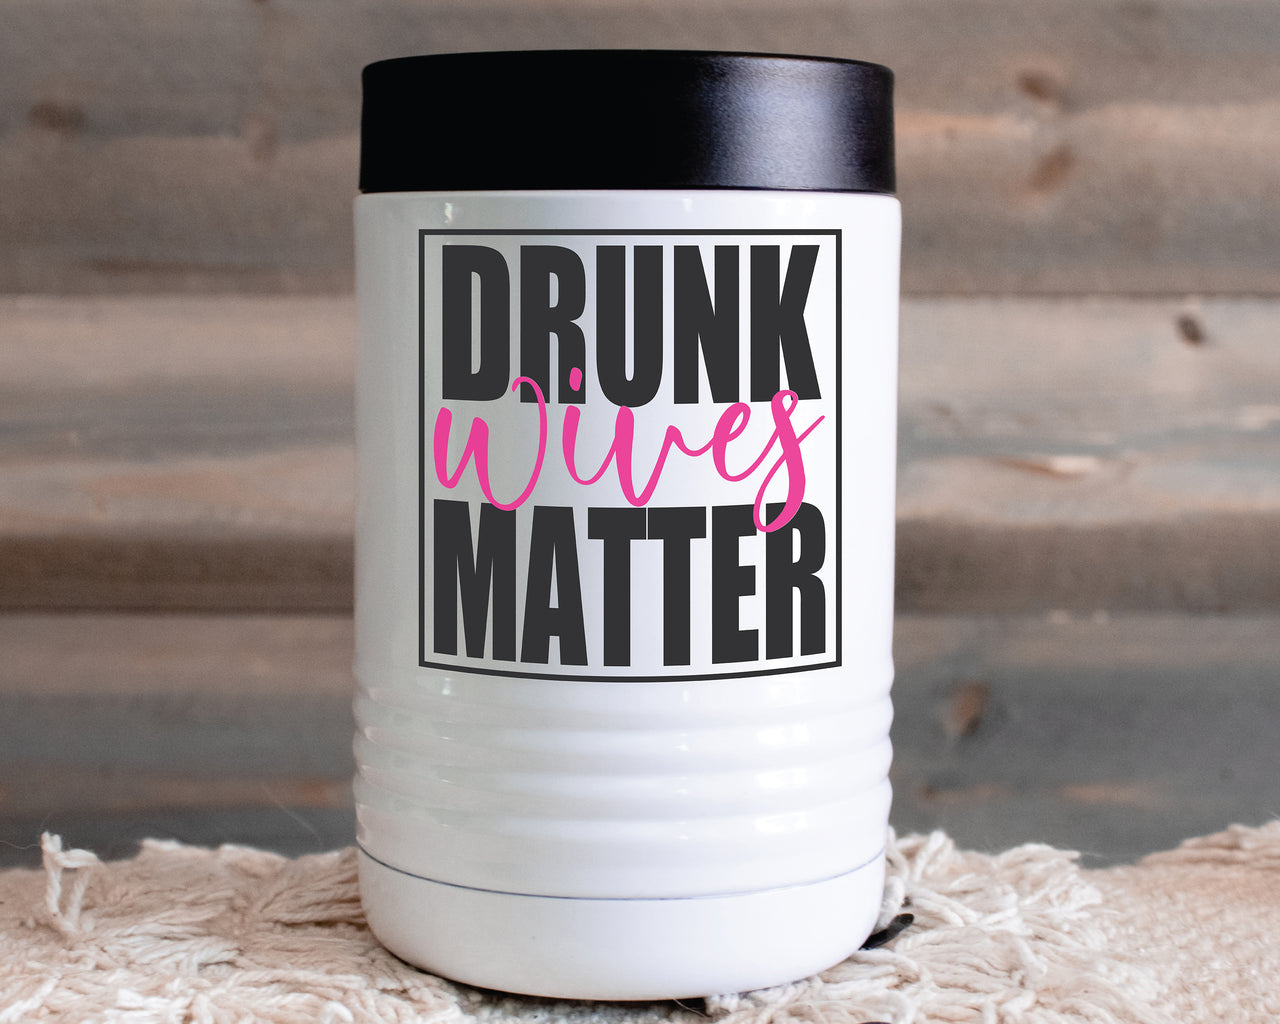 Drunk Wives Matter SVG